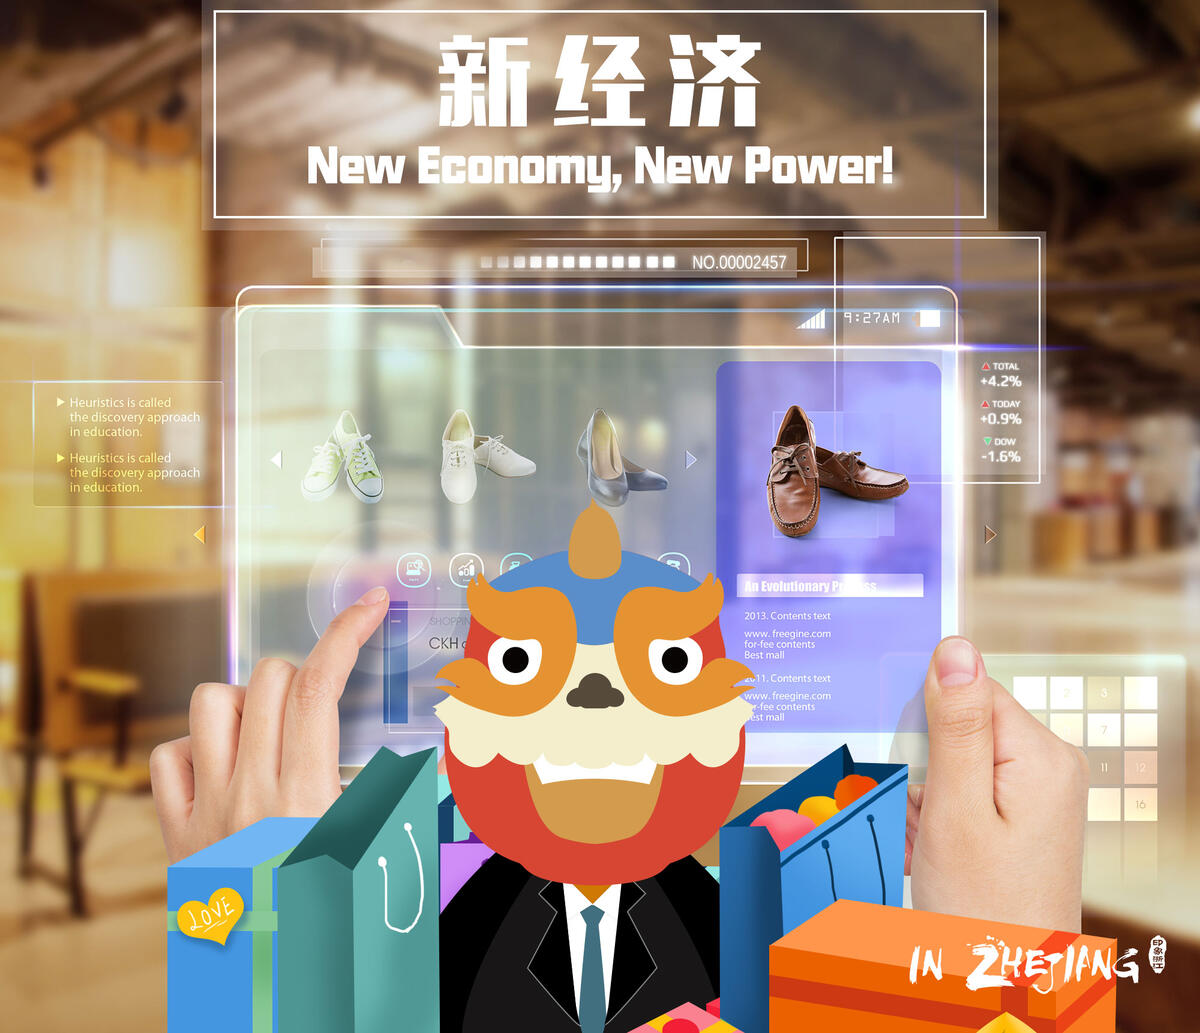 New Economy, New Power!